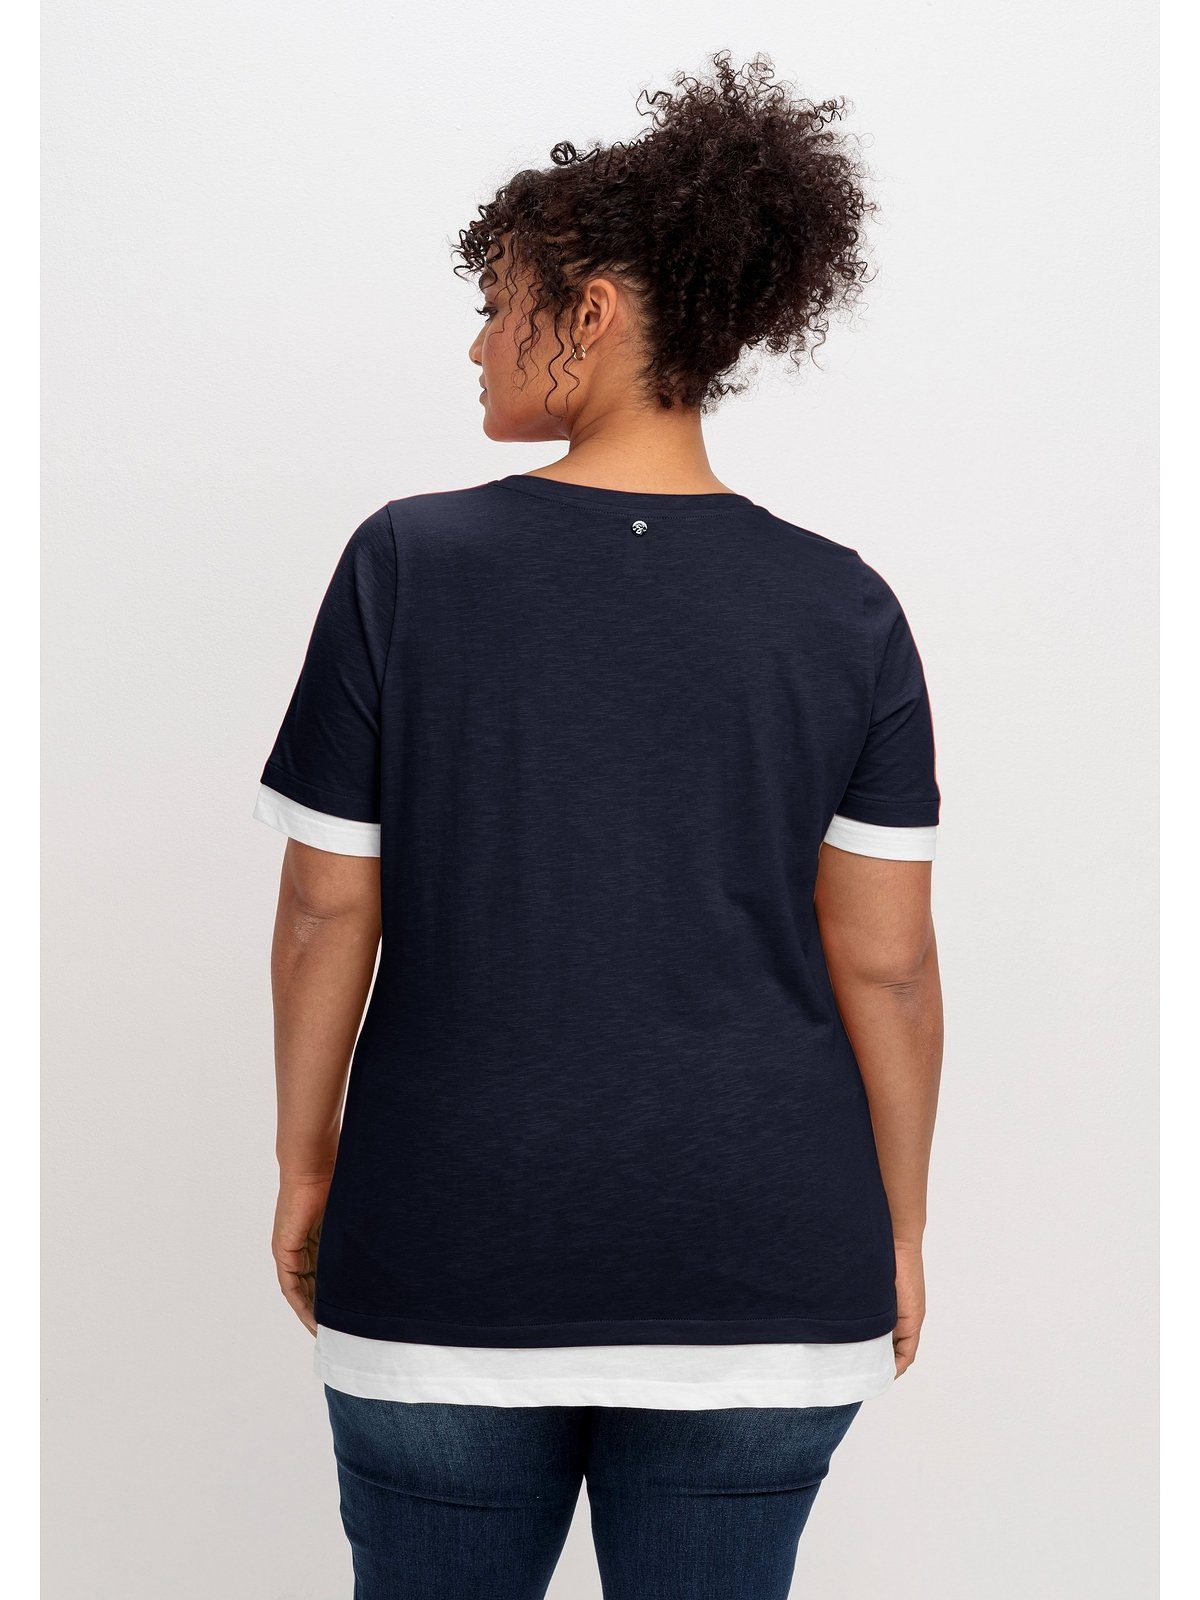 2-in-1-Optik, Große 2-in-1-Shirt Sheego V-Ausschnitt tiefblau-weiß in Größen mit